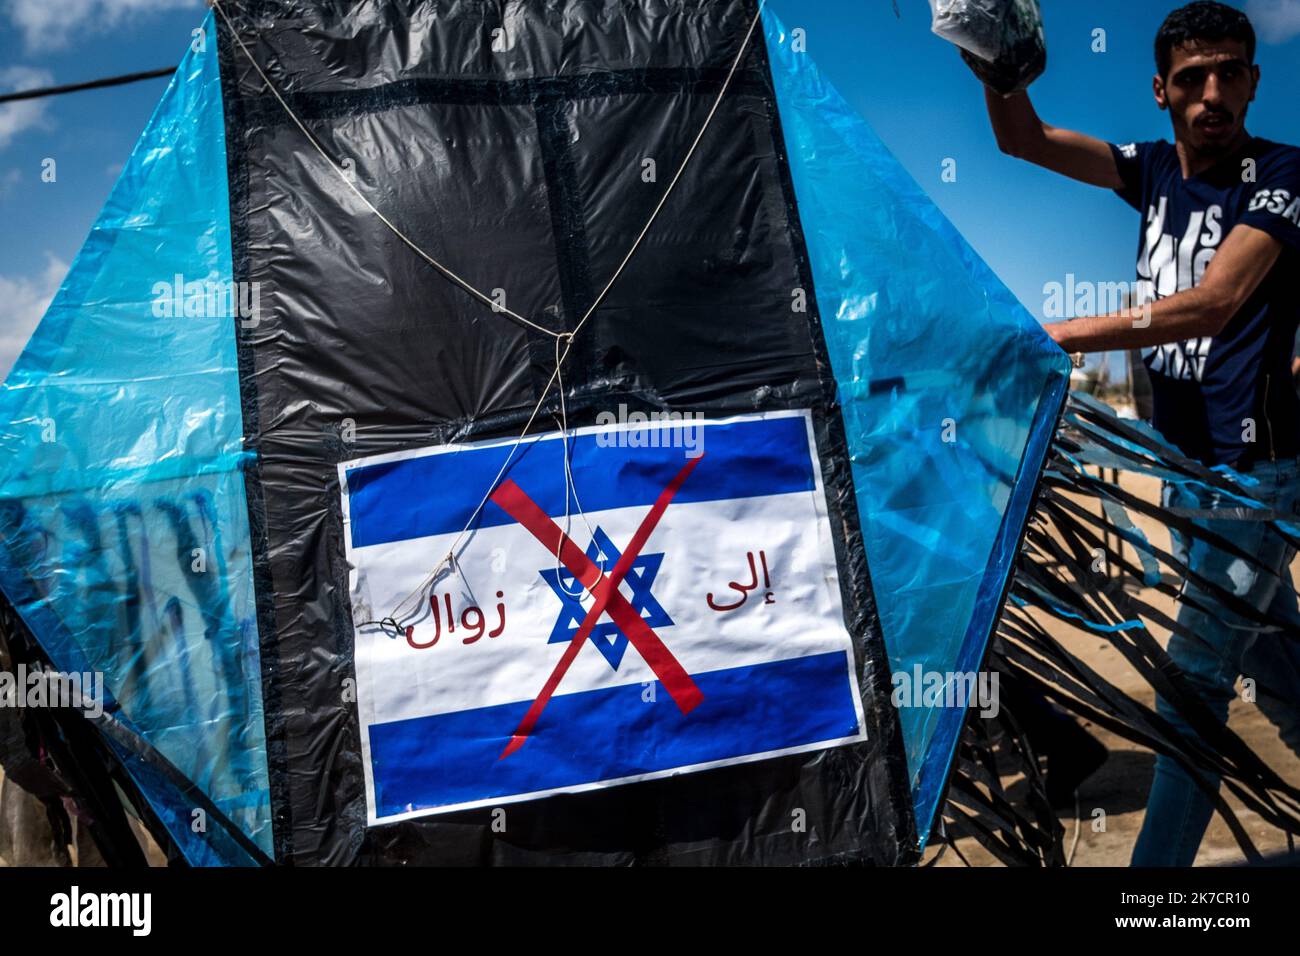 ©Michael Bunel / Le Pictorium/MAXPPP - Michael Bunel / Le Pictorium - 14/05/2018 - Palästina / Bande de Gaza / Malaka - UN Manifest avec un cerf volant ou le drapeau d'israel a ete barre en Rouge, se dirige vers la frontiere ou a lieu un rassemblement de Masse, -La grande marche du retour- a lieu. Les Manifestants reclament le droit a leur retour sur le sol isrealien d'ou ils ont ete chasses il y a 70 ans. 14 Mai 2018. Malaka. Bande de Gaza. Palästina. / 14/05/2018 - Palästina / Gaza-Streifen / Malaka - Ein Demonstrator mit einem Drachen, bei dem die israelische Flagge rot durchgestrichen wurde, geht an die Stockfoto